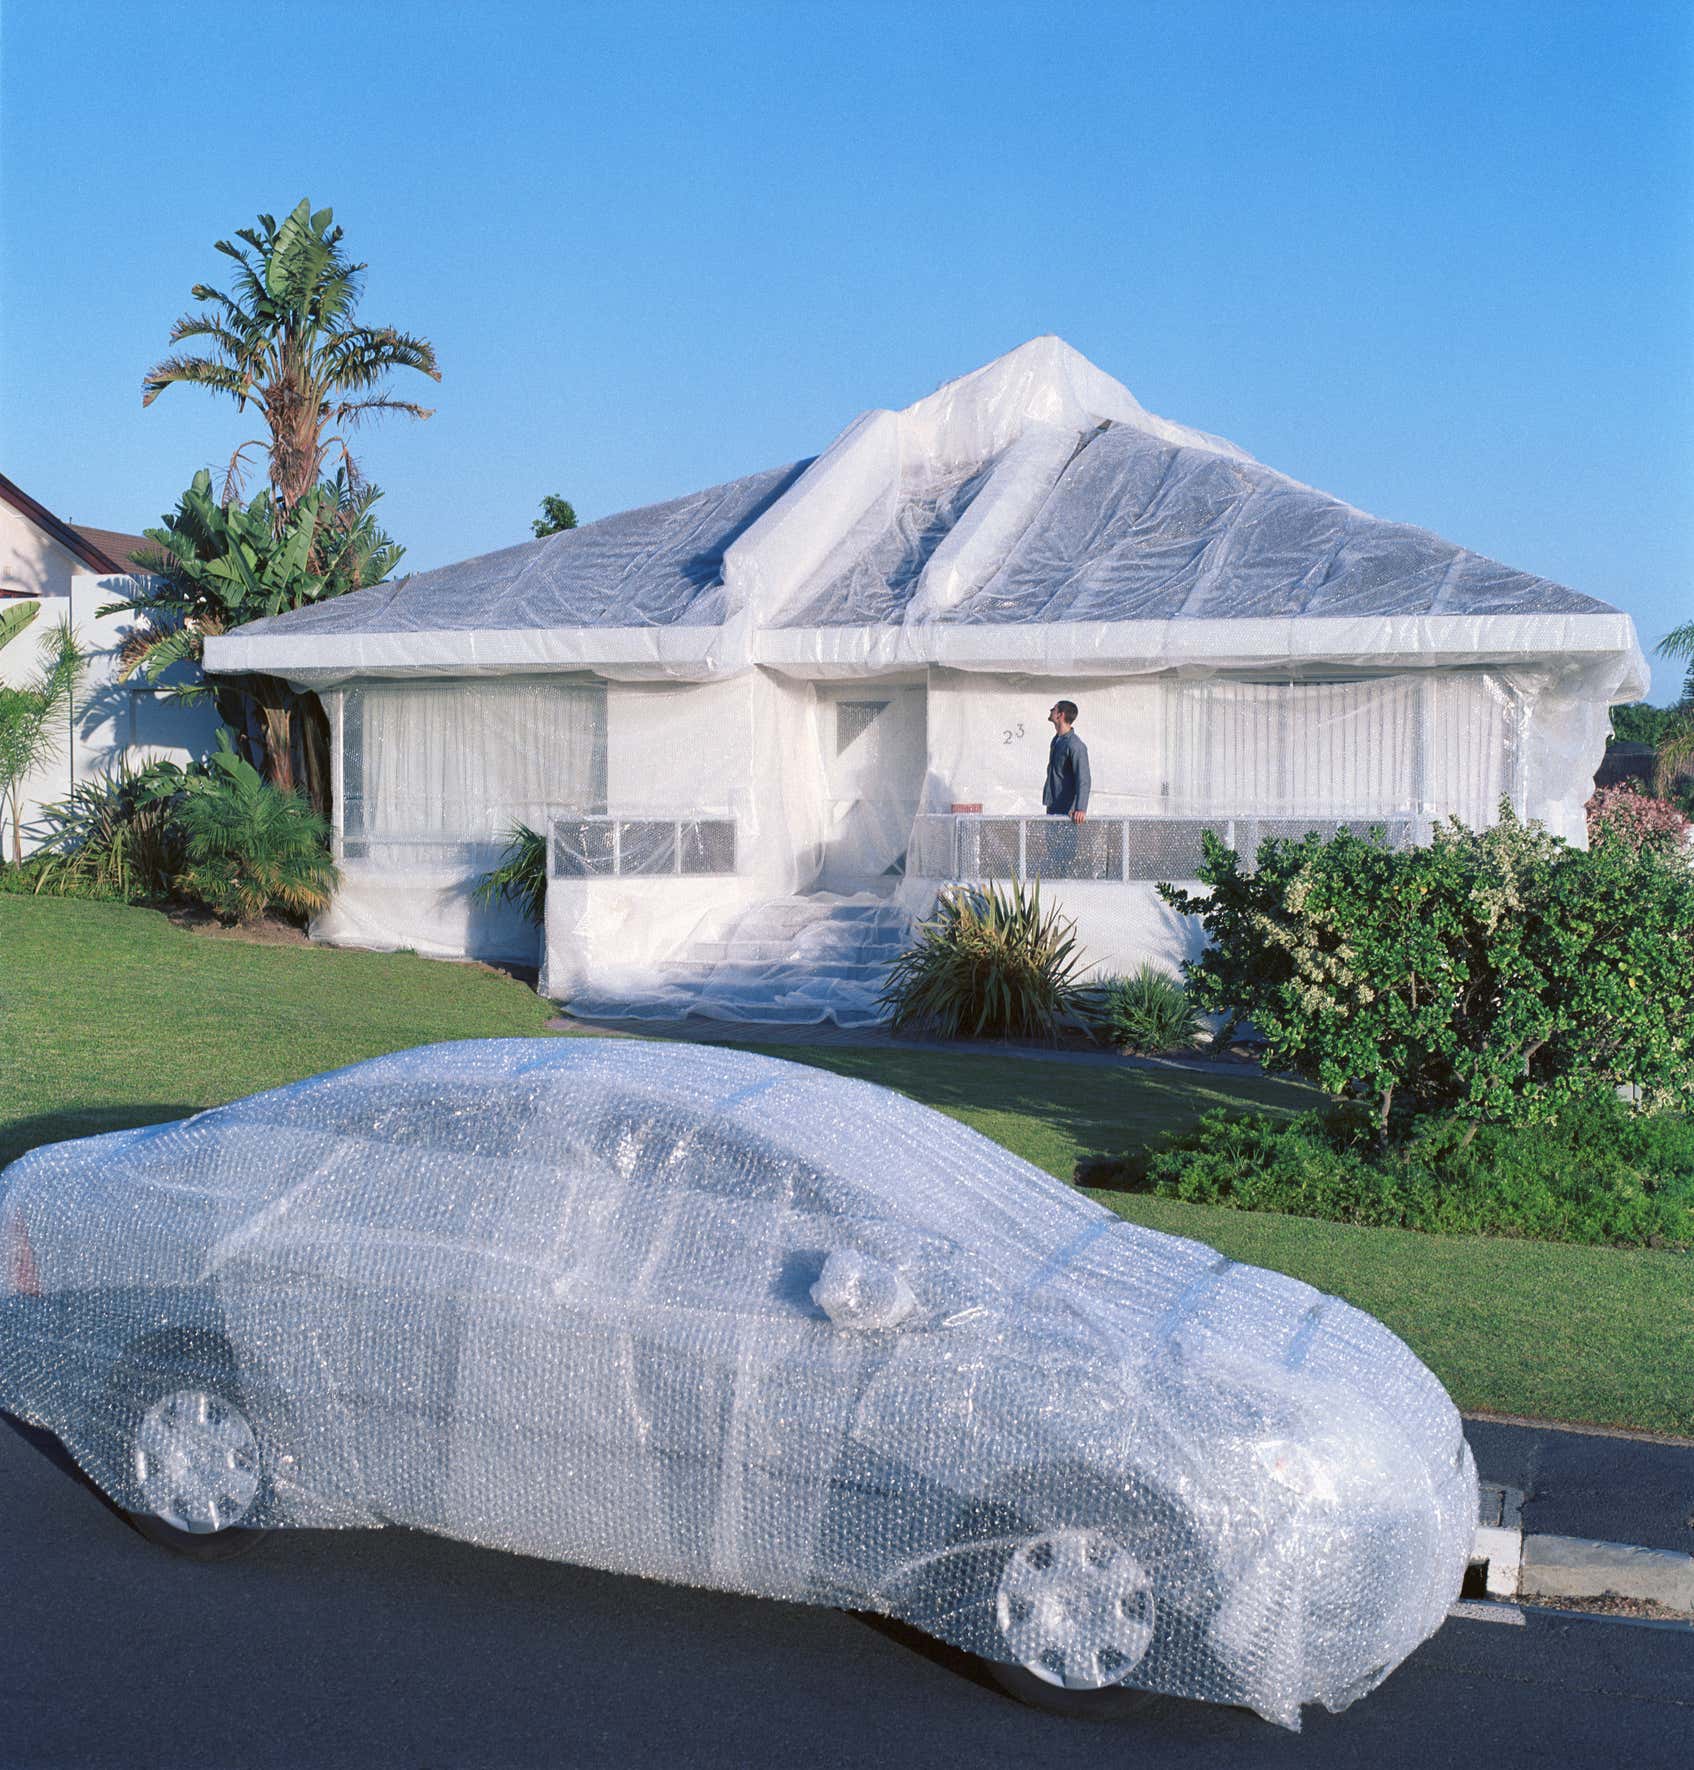 泡泡包裹的汽车和房子。